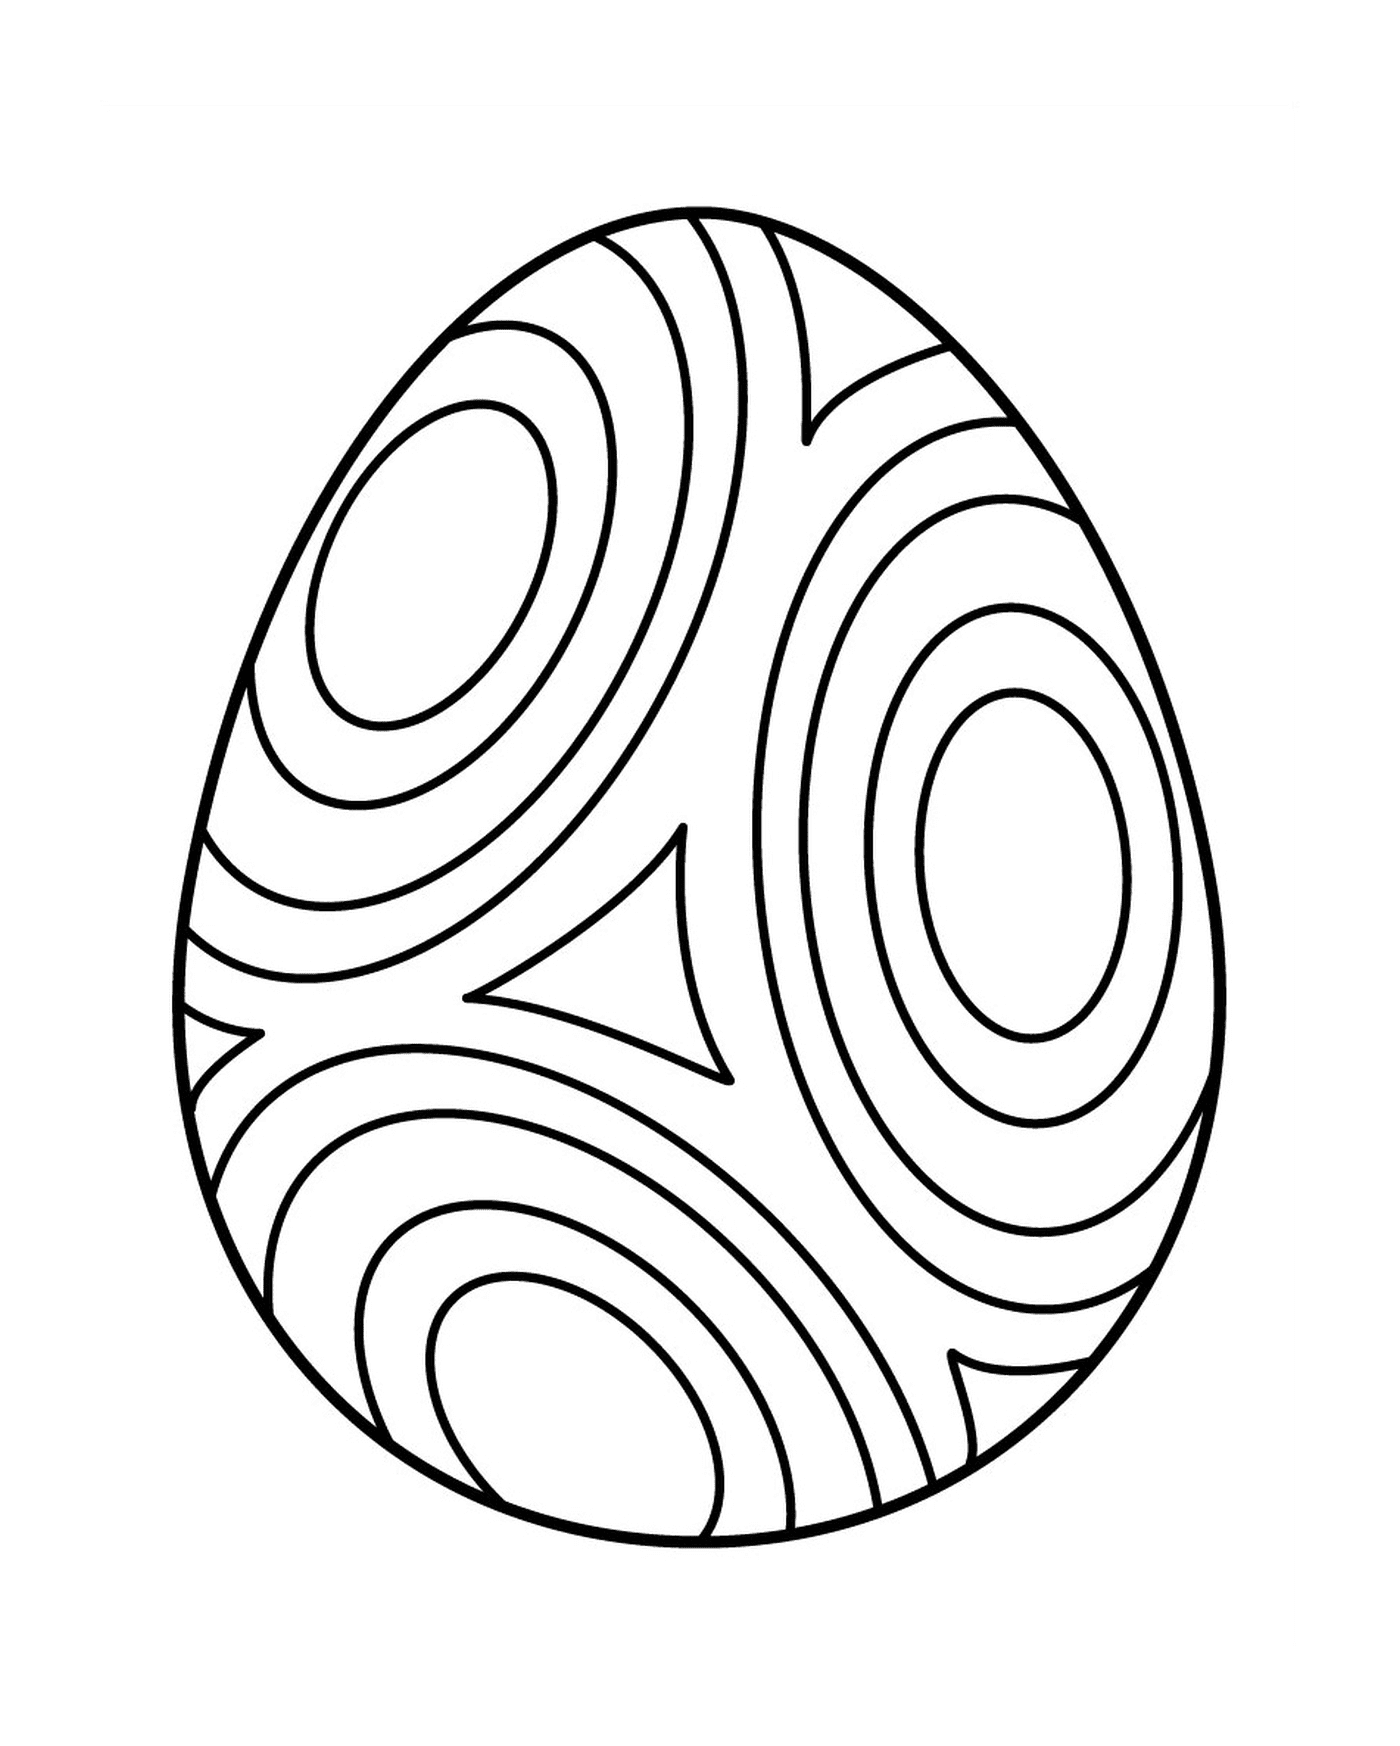 coloriage oeuf de paques avec cercle